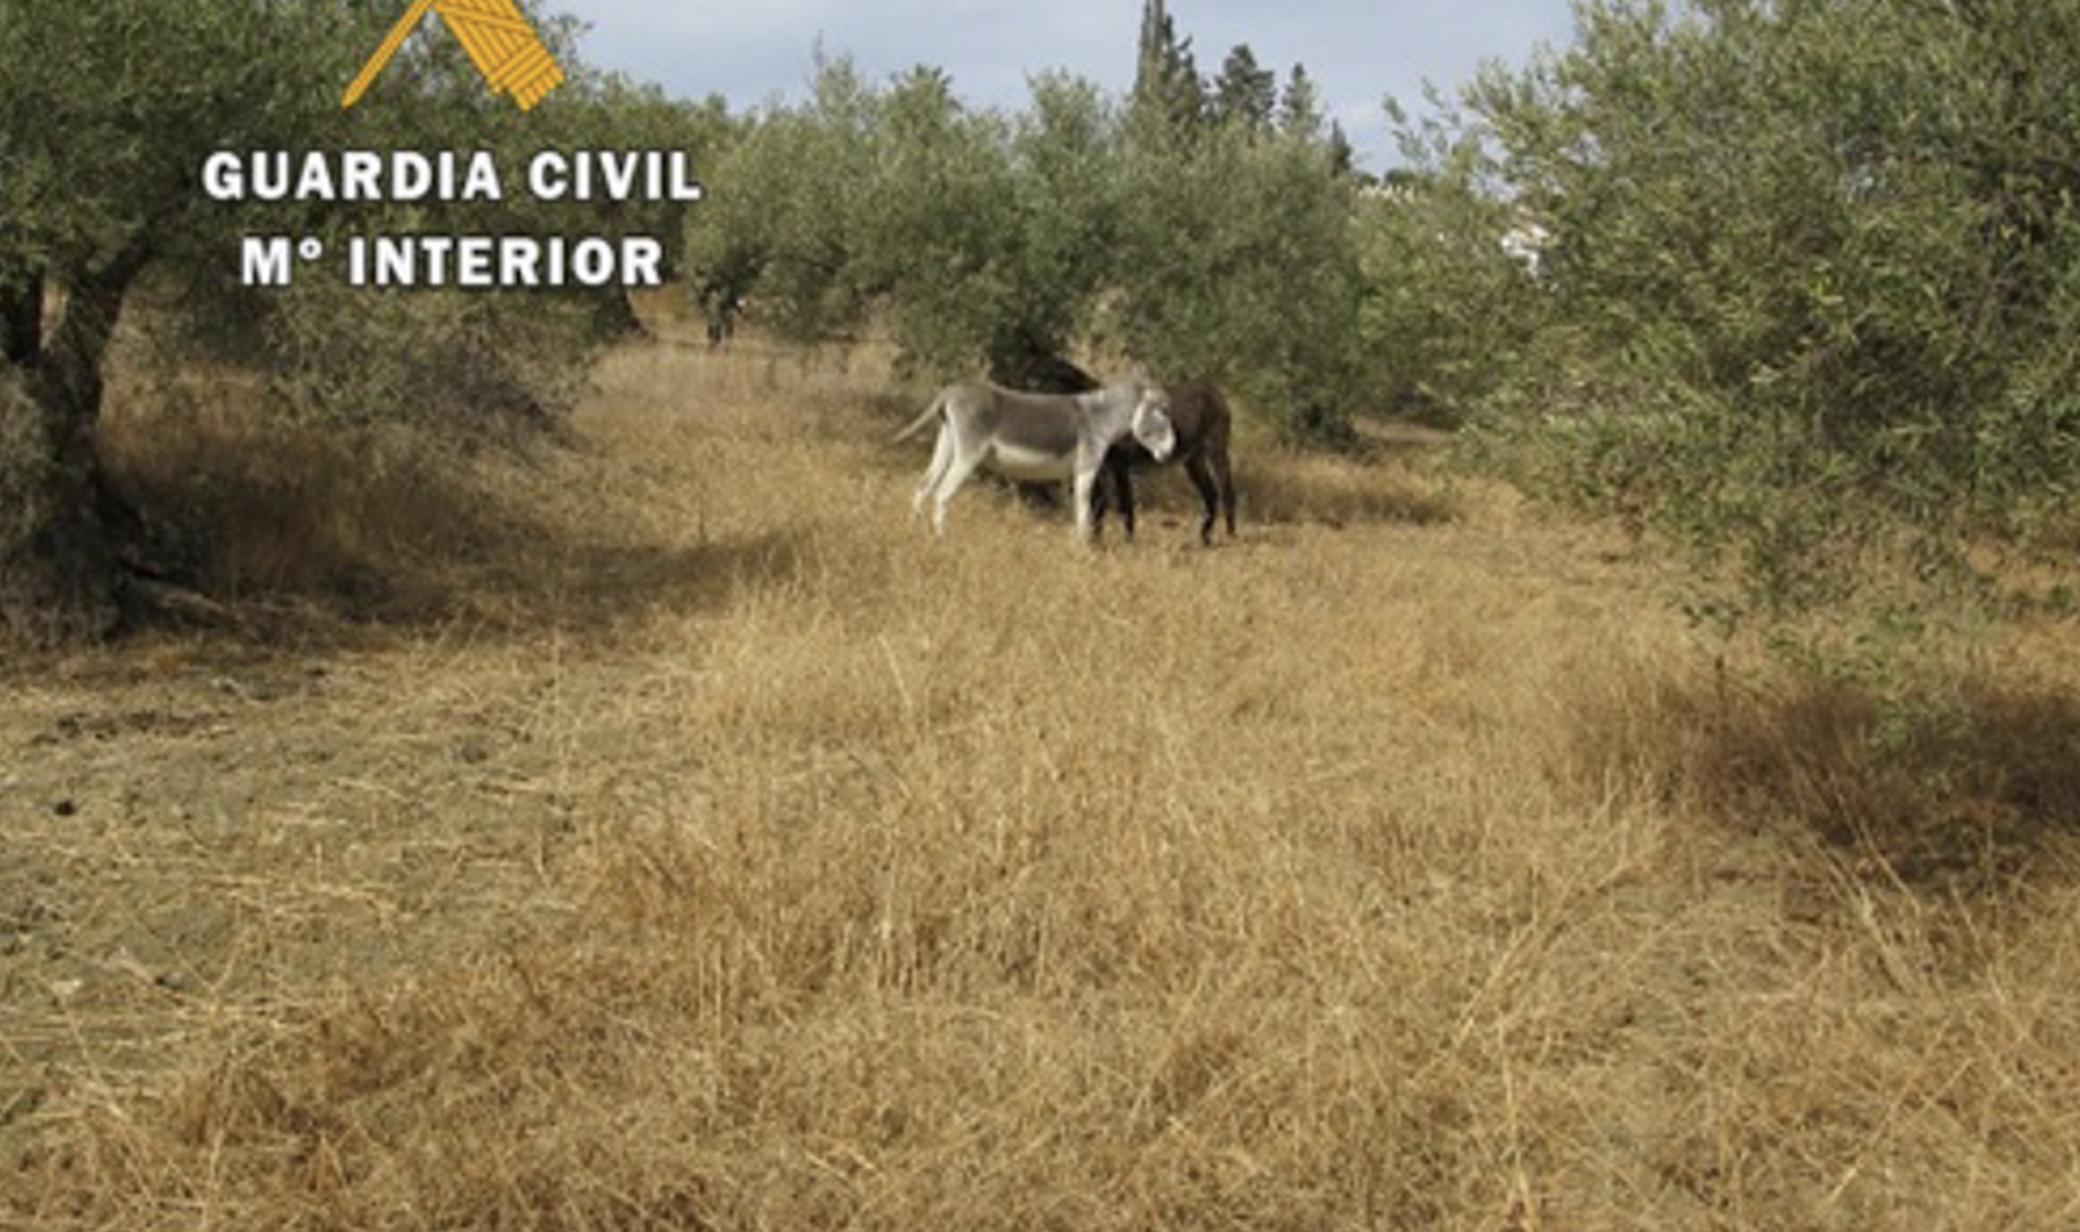 La Guardia Civil ha intervenido un total de 37 animales atados, con heridas y evidentes muestras de desnutrición en Málaga.